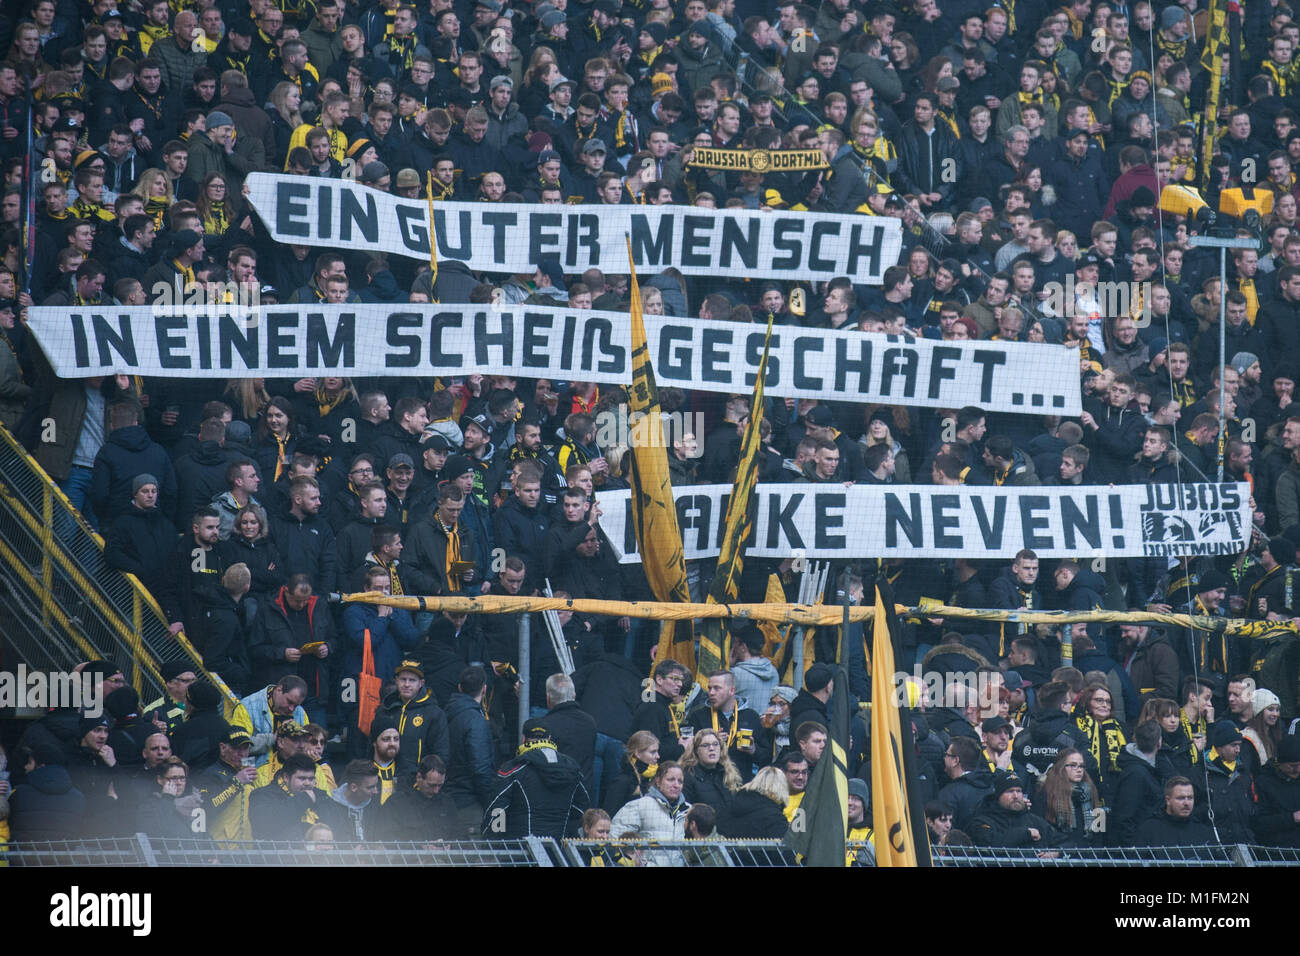 Dortmund, Deutschland. 27 gennaio, 2018. Als Dank fuer Neven SUBOTIC (nicht  im Bild) halten Dortmunder Fan Banner hoch, ' Ein guter Mensch in einem  scheiß Geschaeft, Danke Neven ', Ventilatore, ventole, Zuschauer,